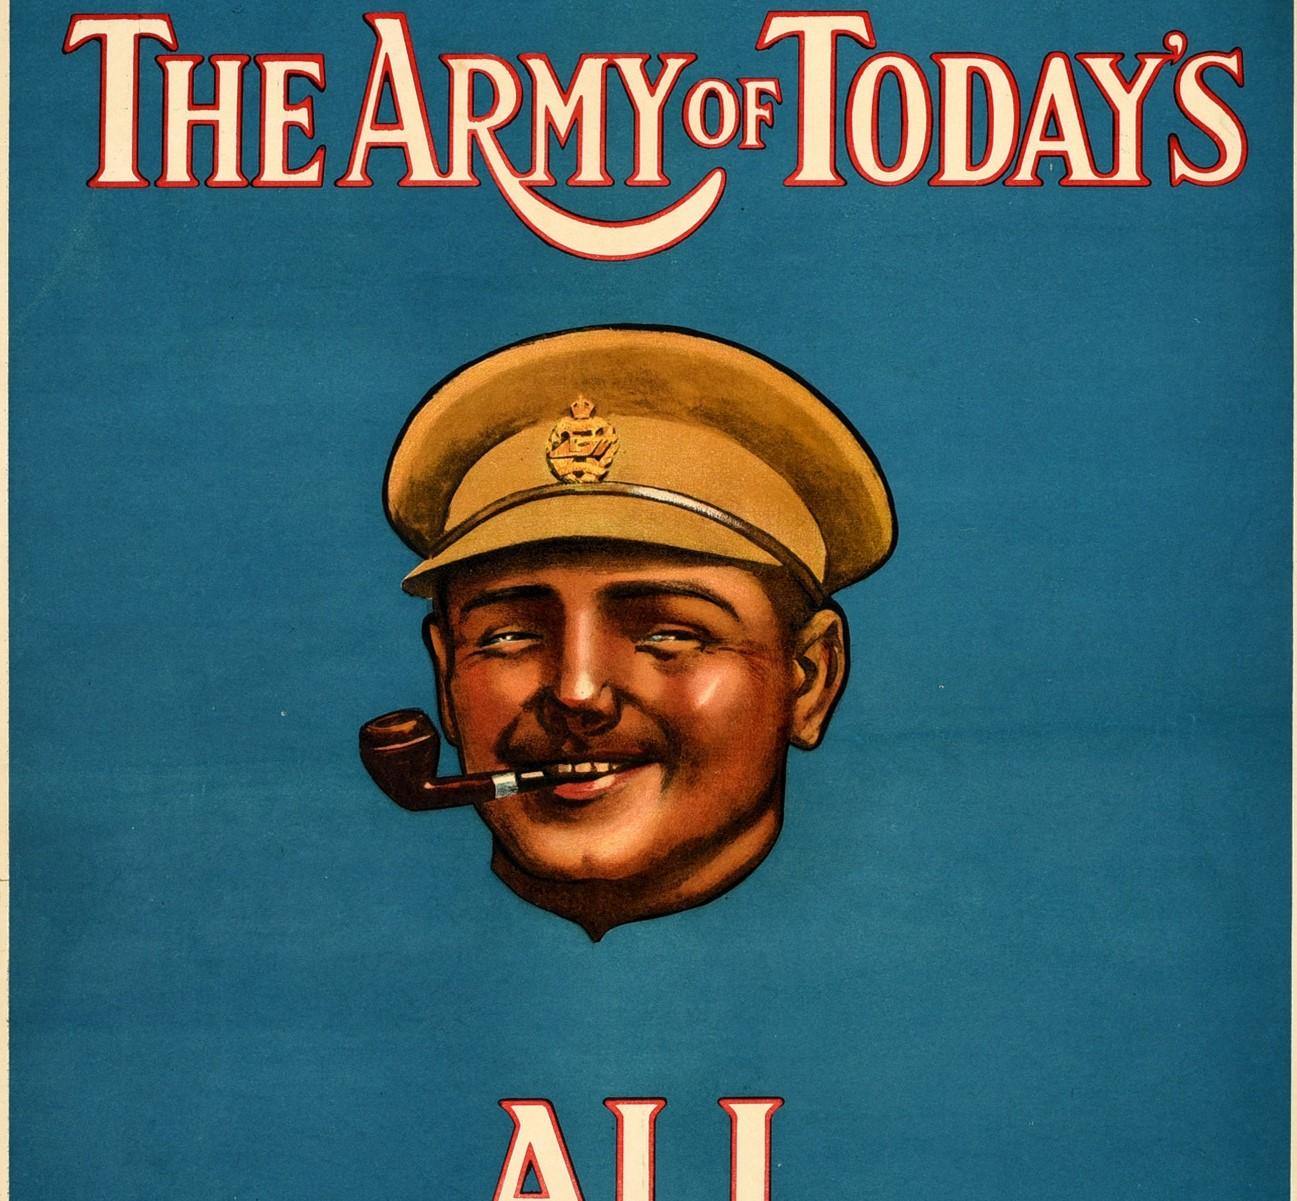 Affiche de recrutement militaire originale et ancienne - L'armée d'aujourd'hui est très bien ! - avec un grand dessin d'un soldat souriant fumant la pipe sur un fond bleu avec les lettres stylisées blanches et rouges au-dessus et en dessous.